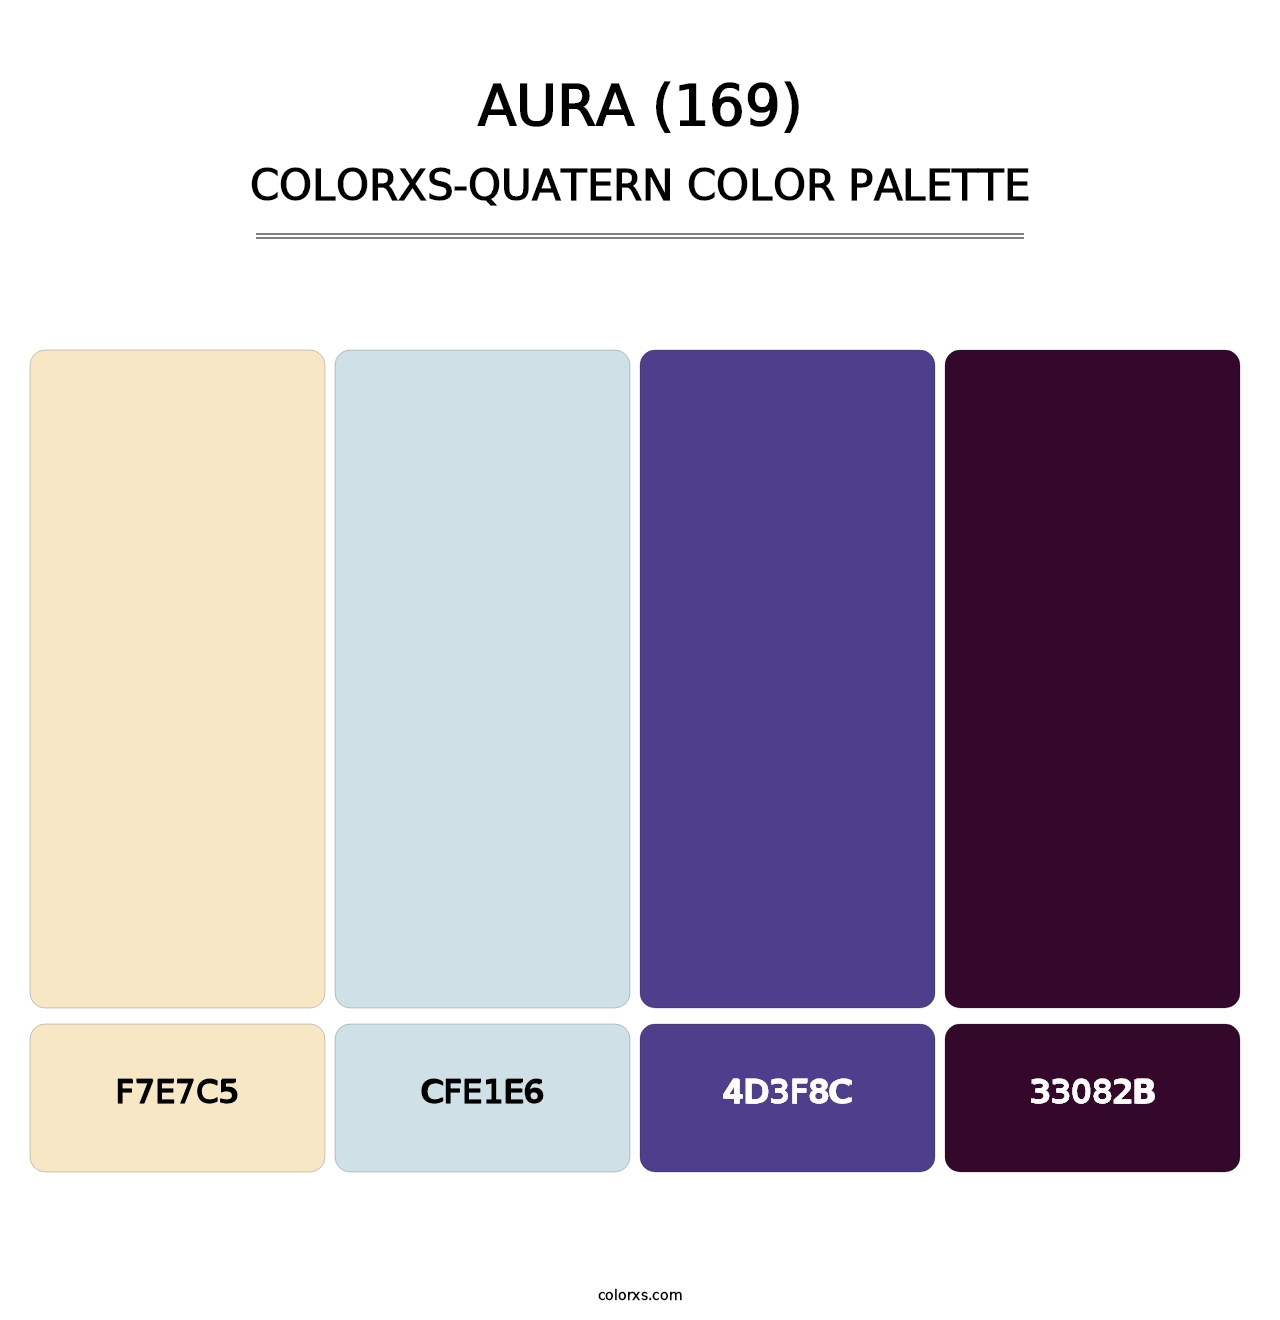 Aura (169) - Colorxs Quatern Palette